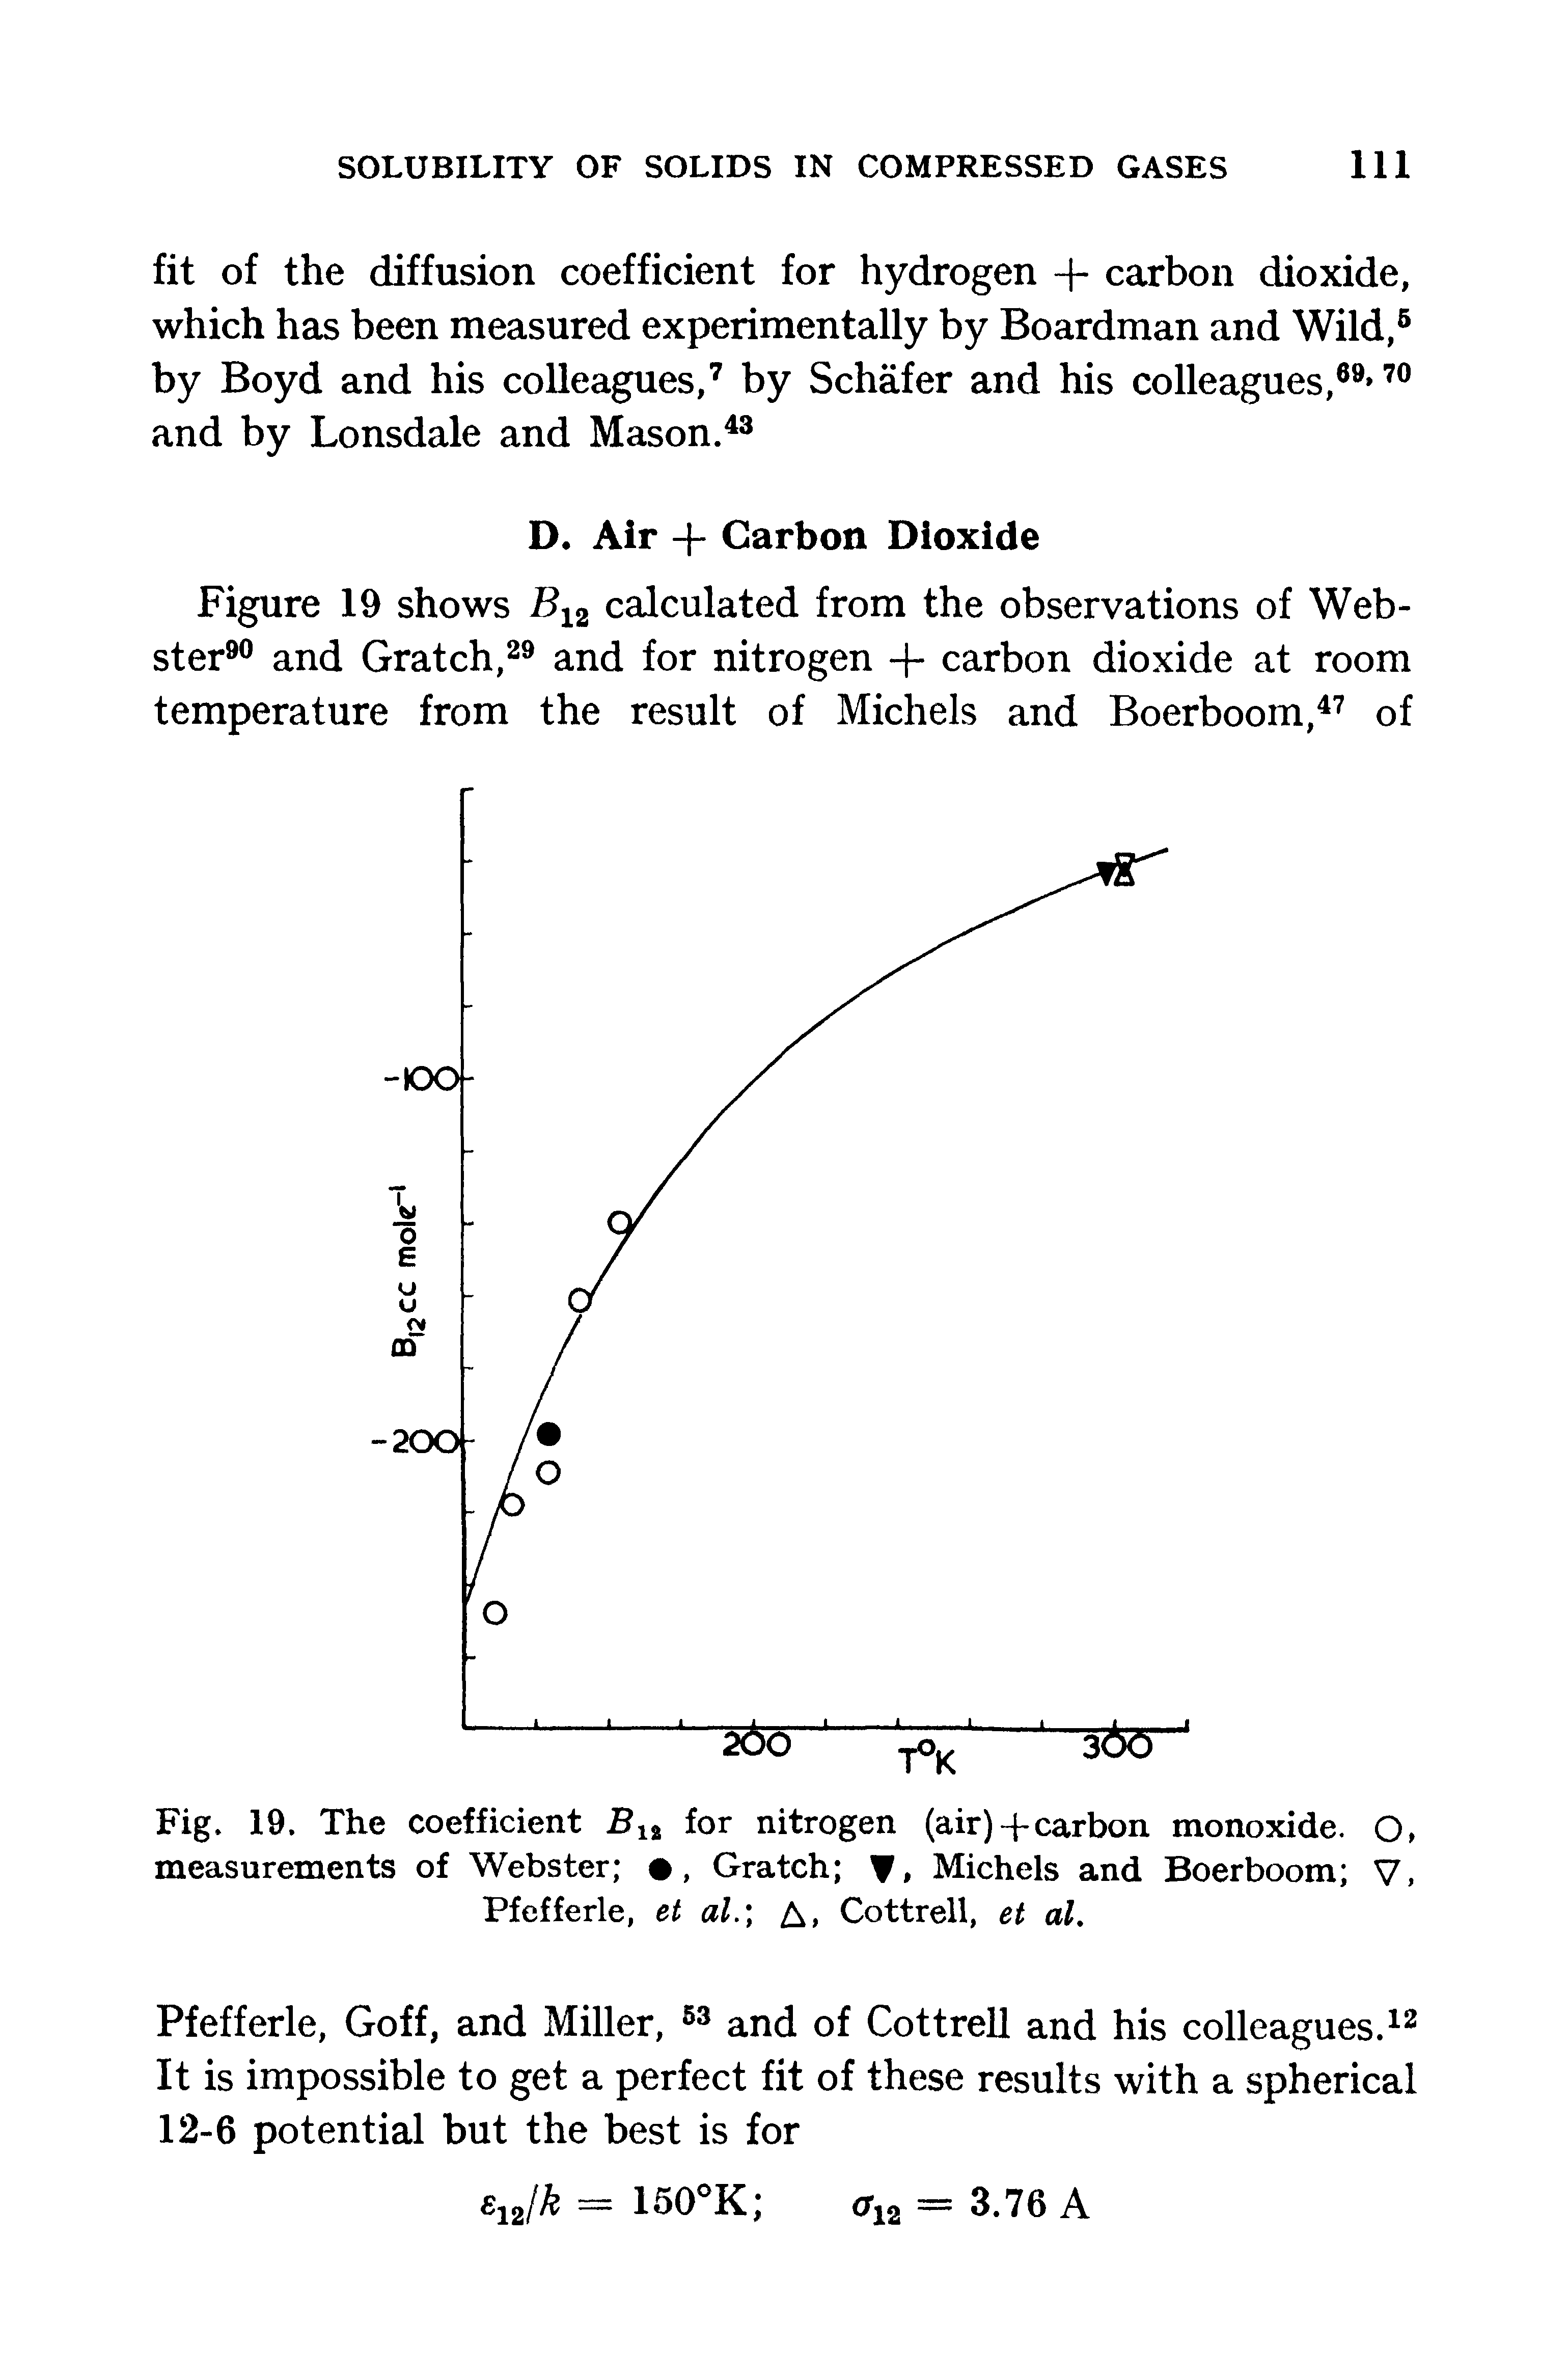 Fig. 19. The coefficient B1% for nitrogen (air)-fcarbon monoxide. O, measurements of Webster , Gratch , Michels and Boerboom V, Pfefferle, et al. A, Cottrell, et al.